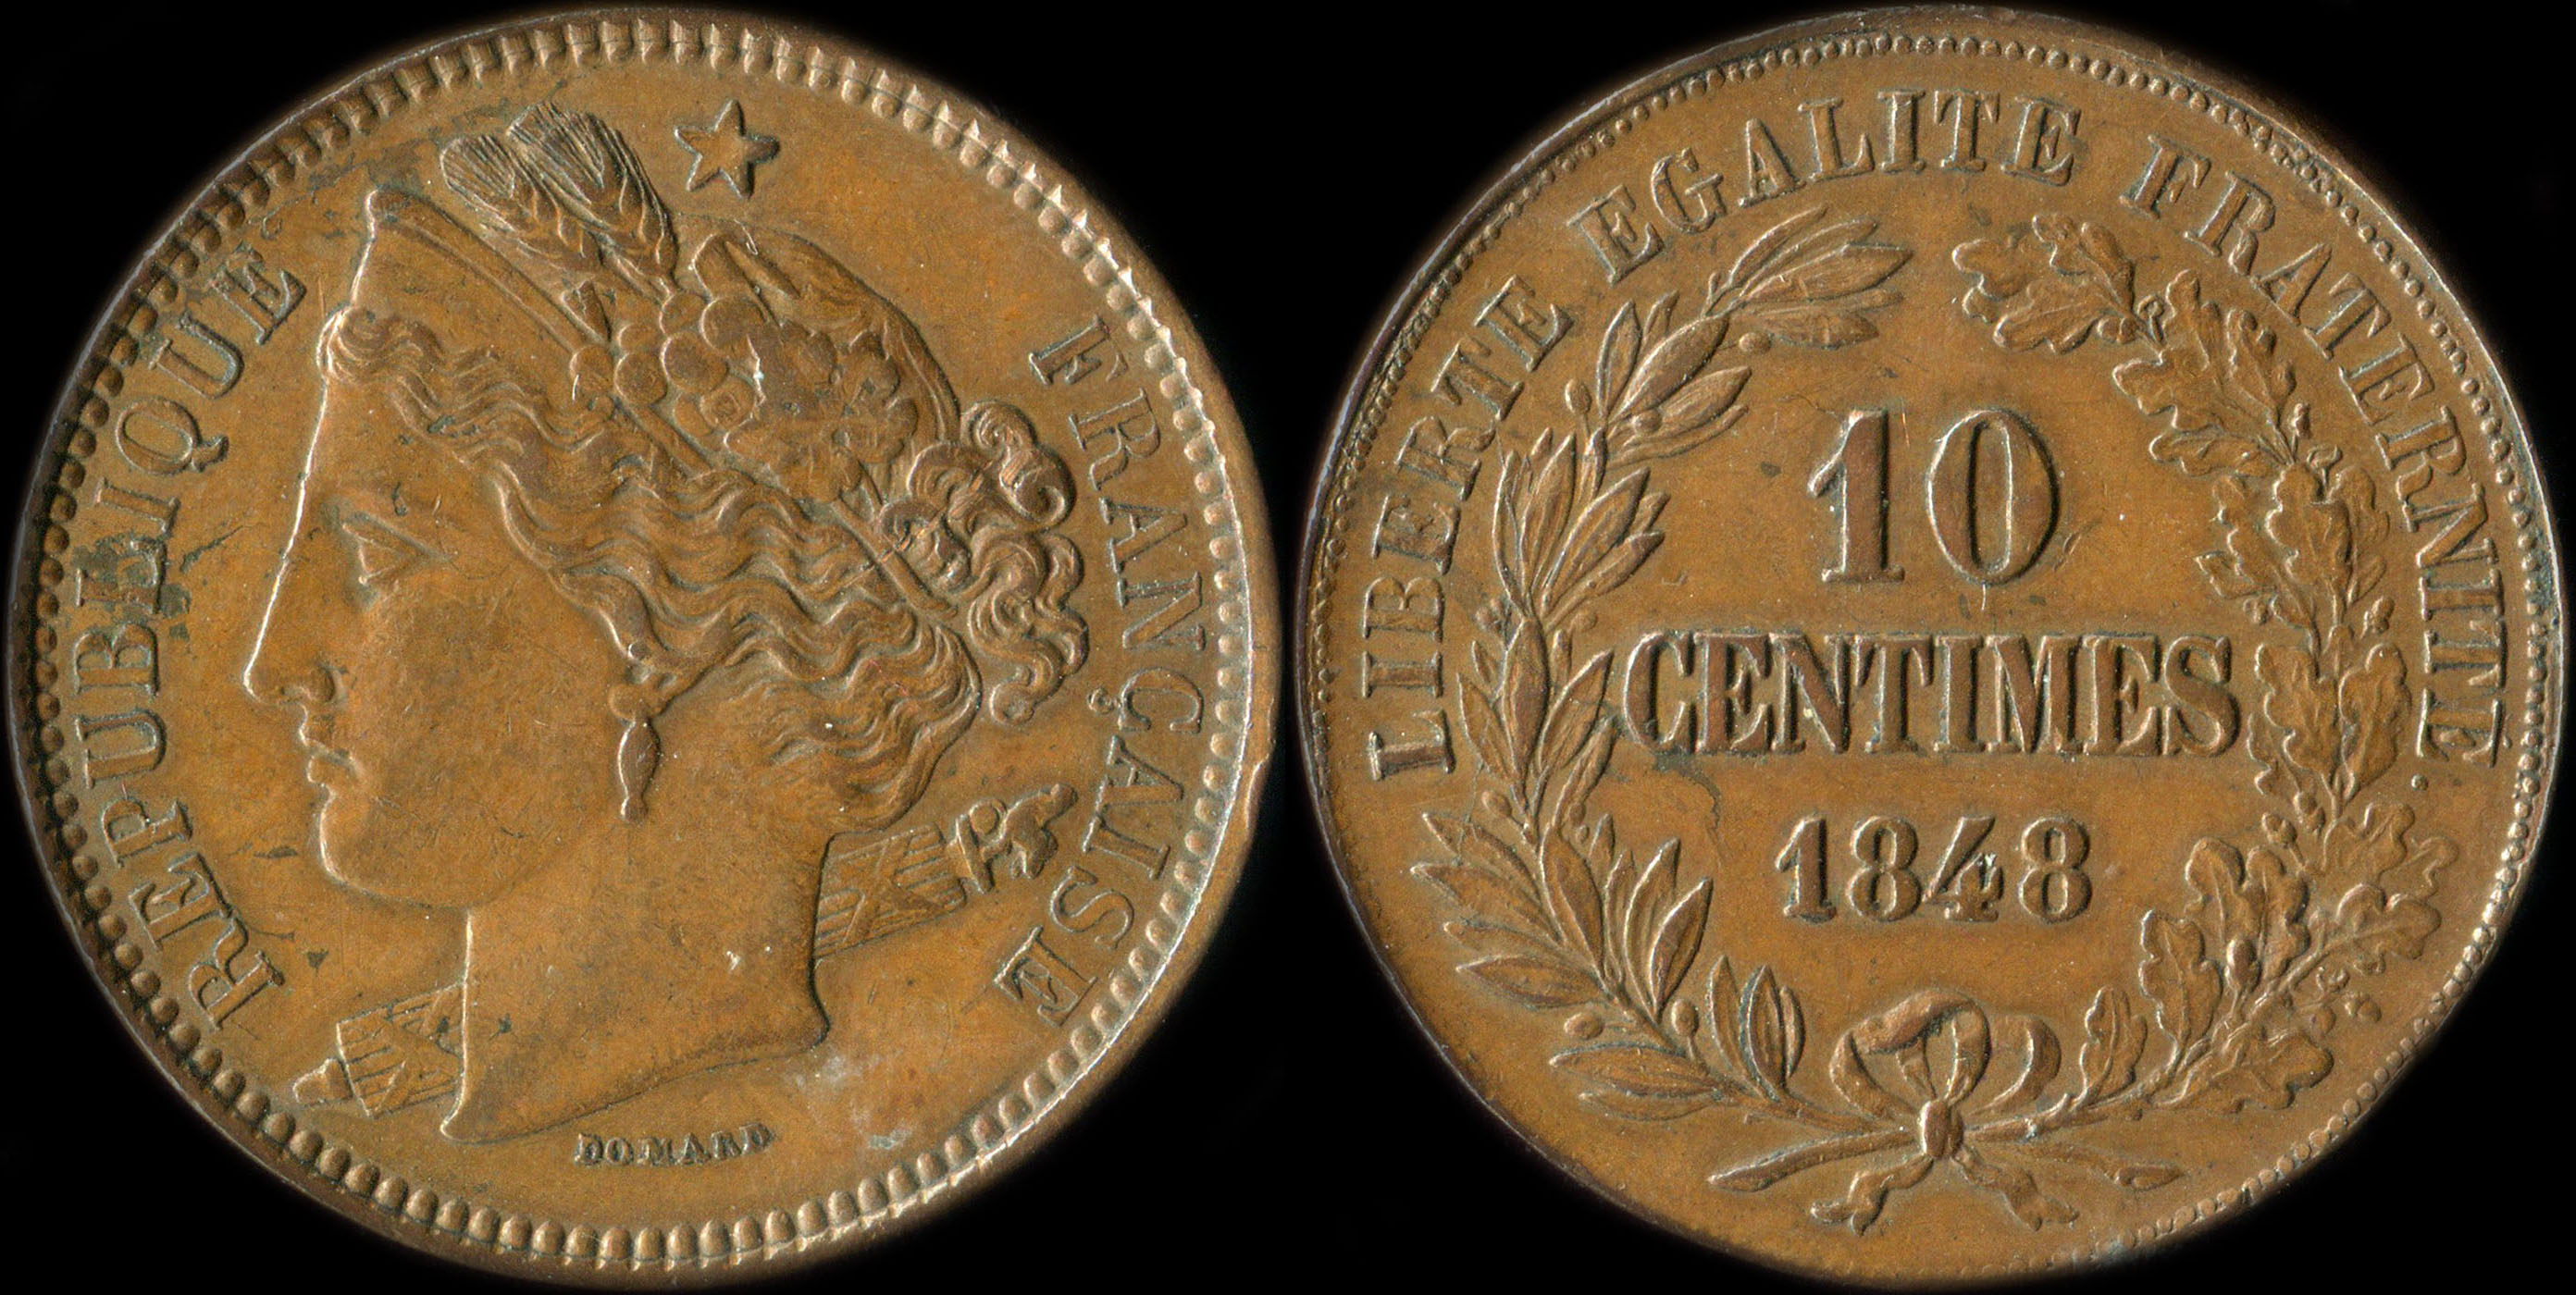 Pice de 10 centimes 1848 - Concours de Domard modifi - cuivre type de revers A